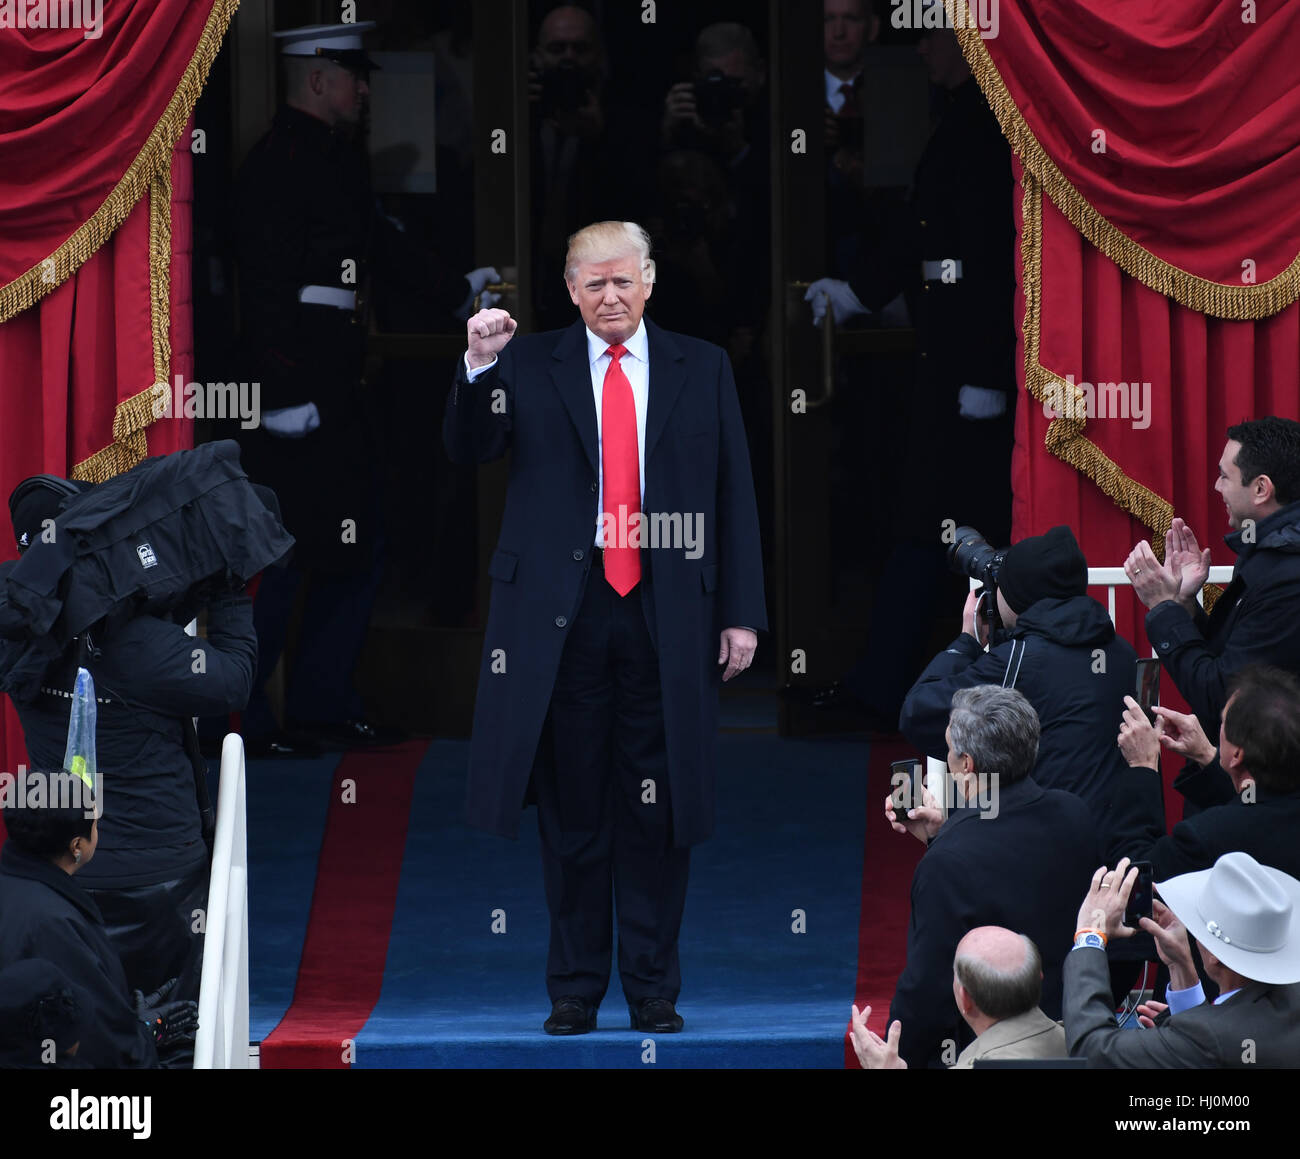 Präsident elect Trump kommt aus seiner Amtseinführung am 20. Januar 2017 in Washington, DC Trumpf der 45. Präsident der Vereinigten Staaten wird. Foto von Pat Benic/UPI - kein Draht-SERVICE - Foto: Pat Benic/Consolidated/Dpa Stockfoto